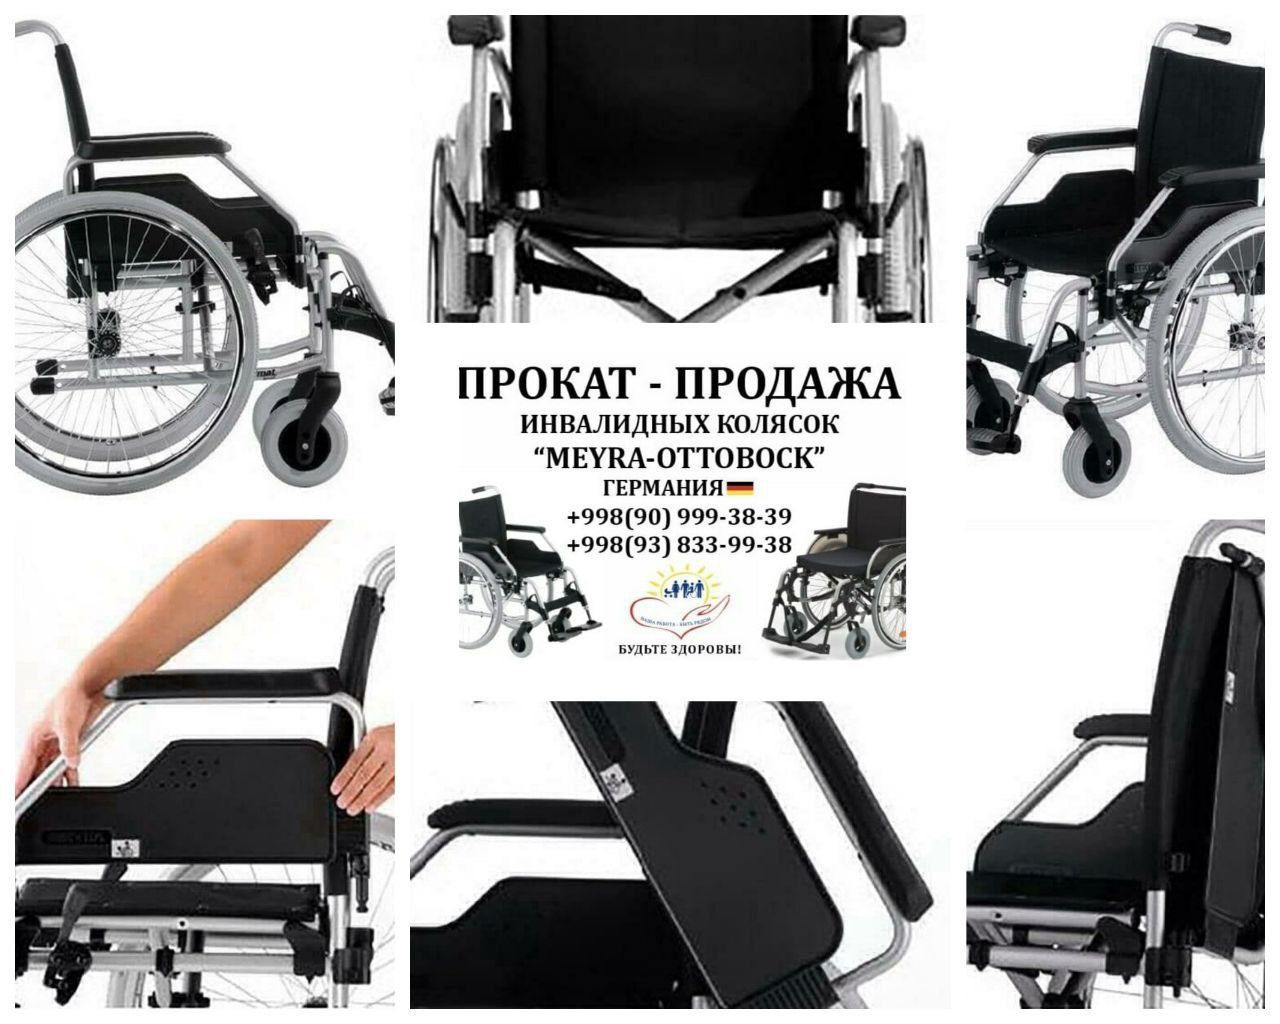 Прокат фирменных инвалидных колясок из Германии модели"Meyra-Ottobok".